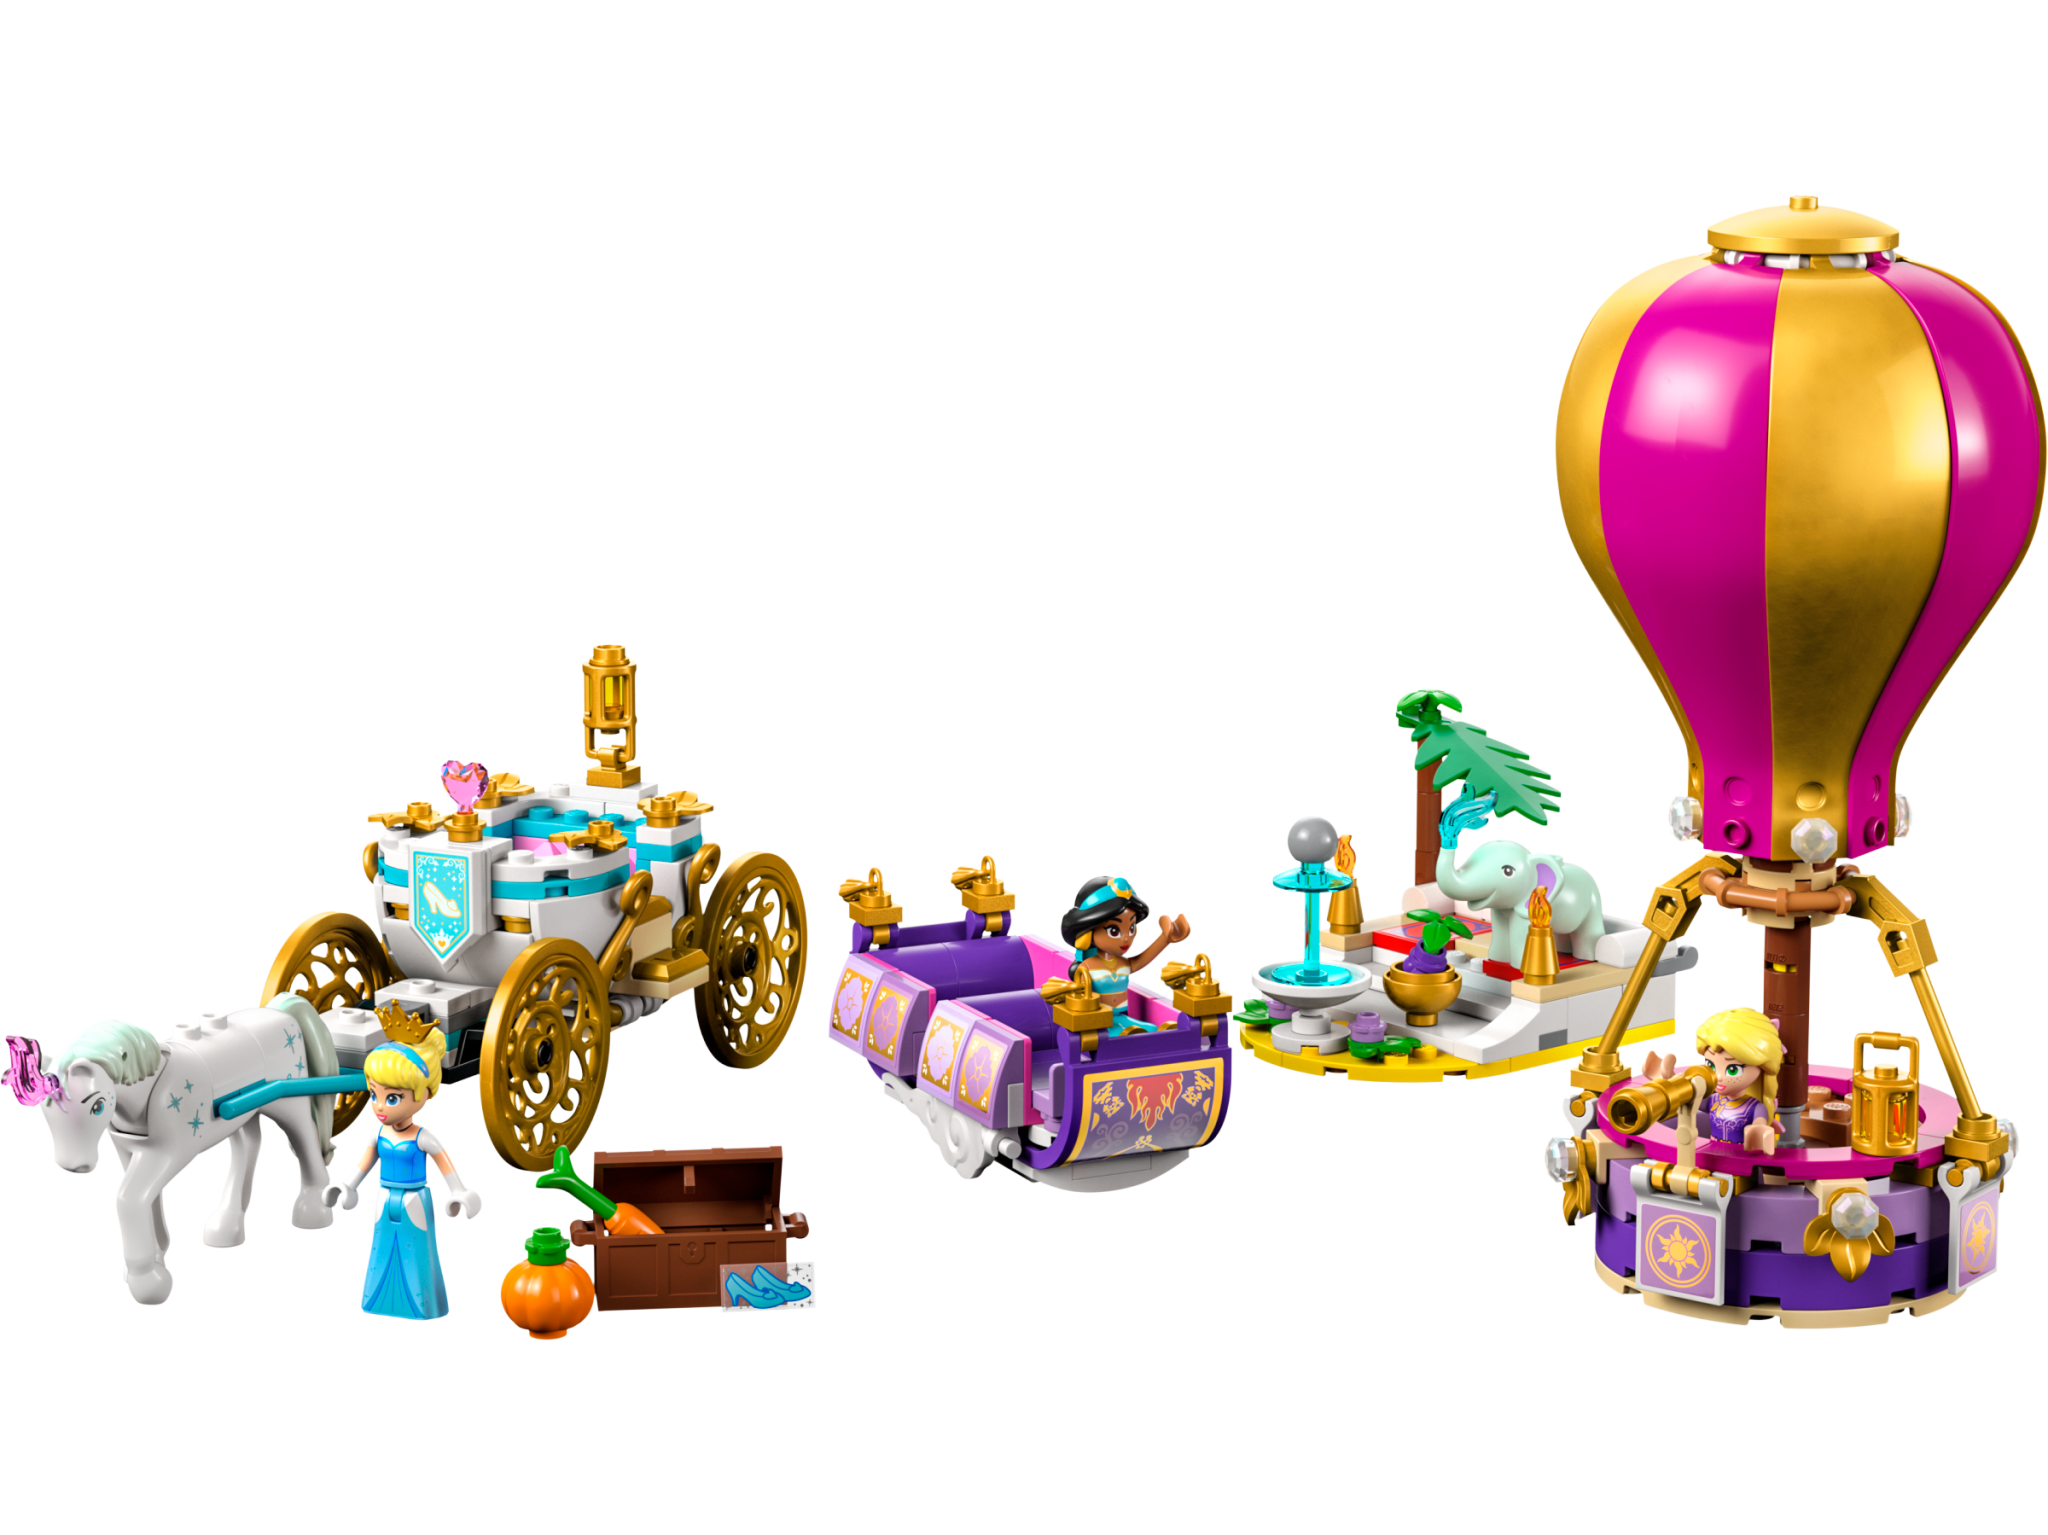 Lego Lego 43216 Disney - Le voyage enchanté de la princesse